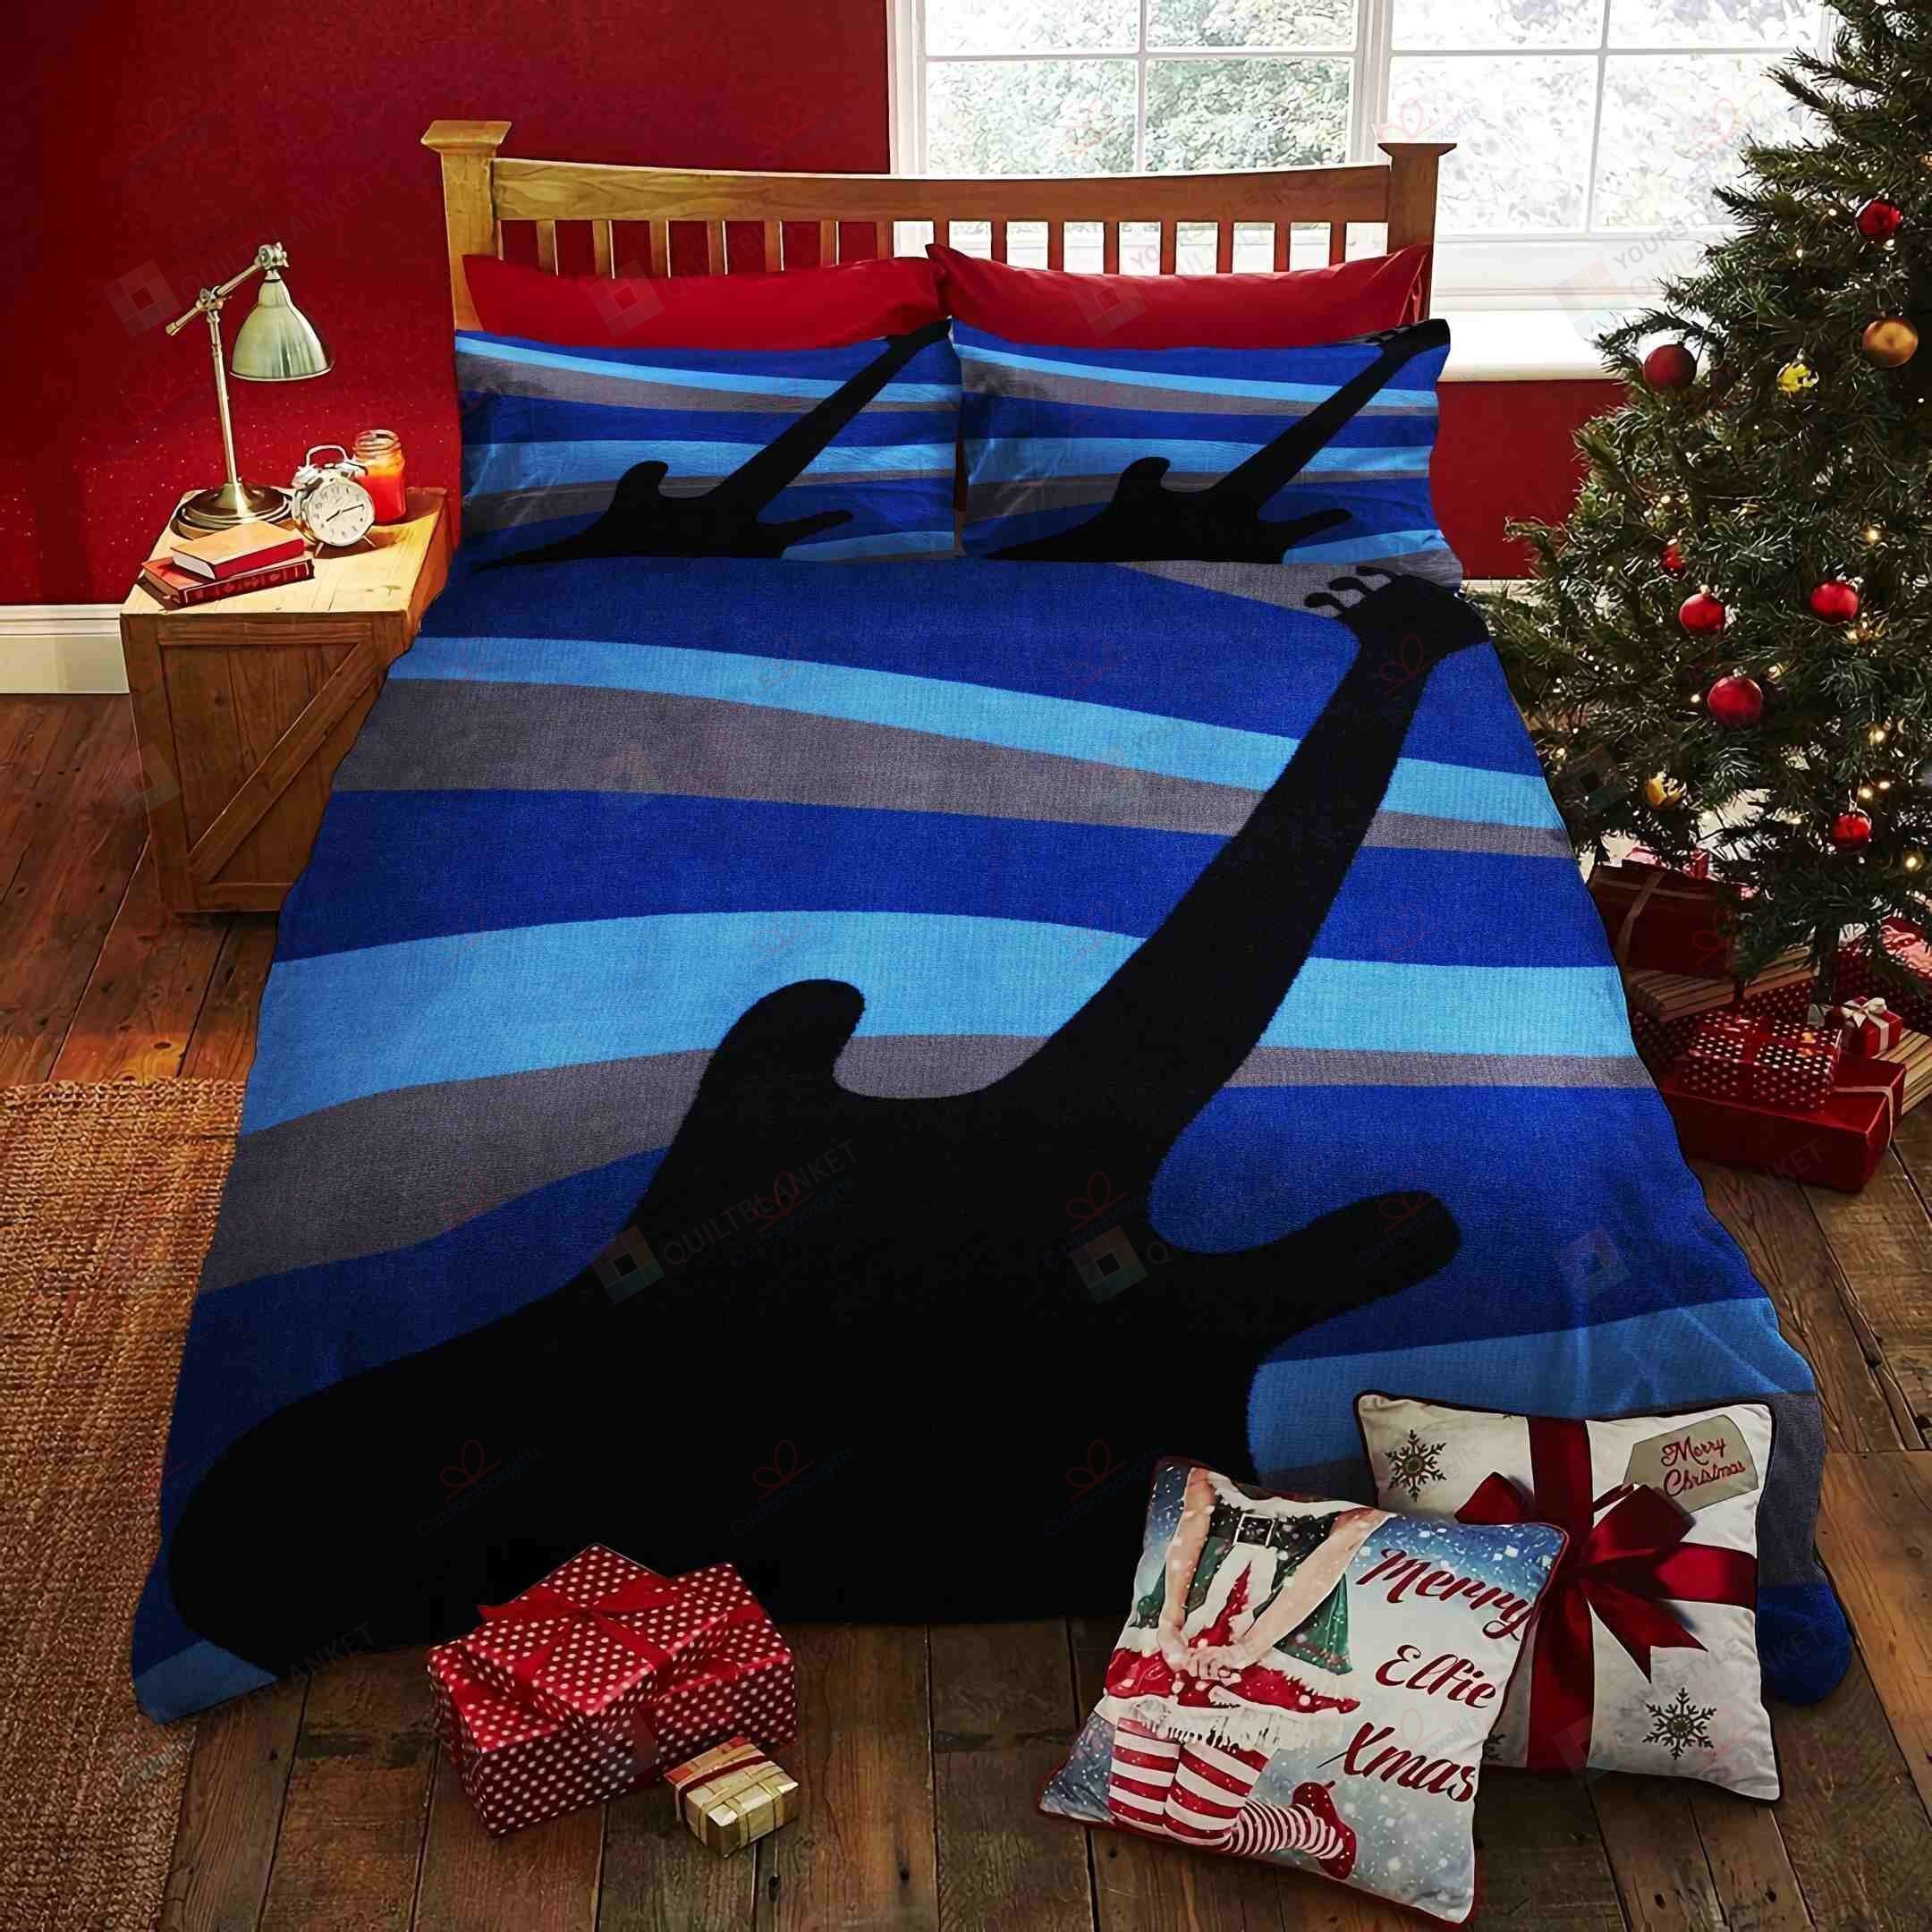 Bass Guitar Bedding Set Bed Sheets Spread Comforter Duvet Cover Bedding Sets